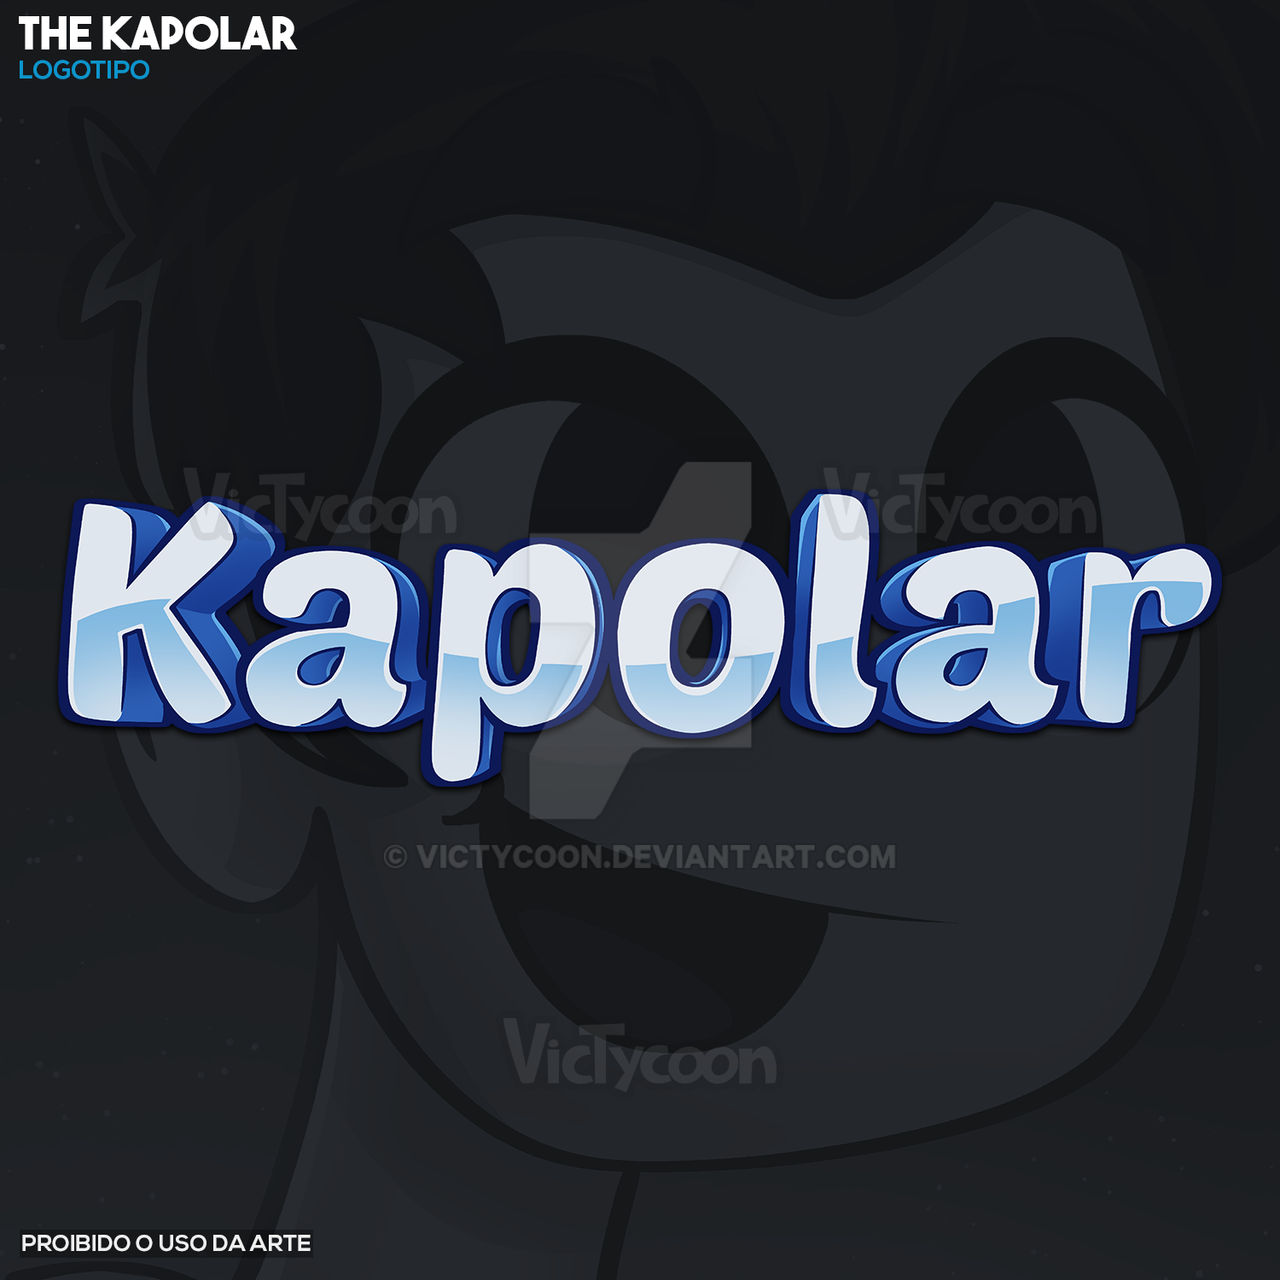 AVATAR - The Kapolar ( Roblox) by VicTycoon on DeviantArt